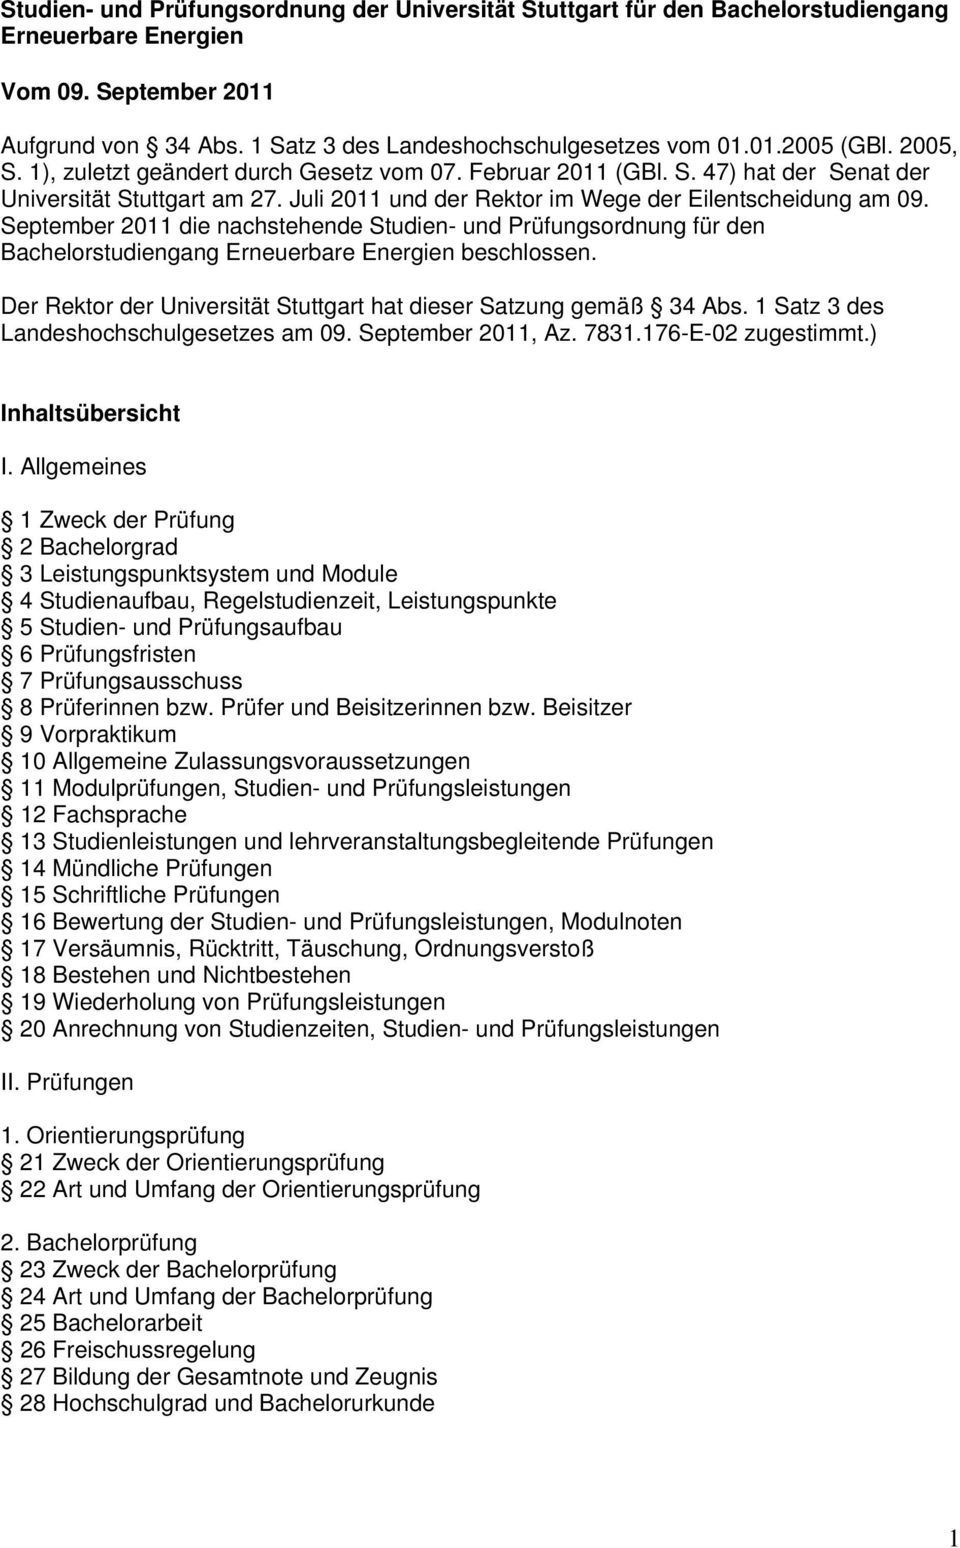 September 2011 die nachstehende Studien- und Prüfungsordnung für den Bachelorstudiengang Erneuerbare Energien beschlossen. Der Rektor der Universität Stuttgart hat dieser Satzung gemäß 34 Abs.